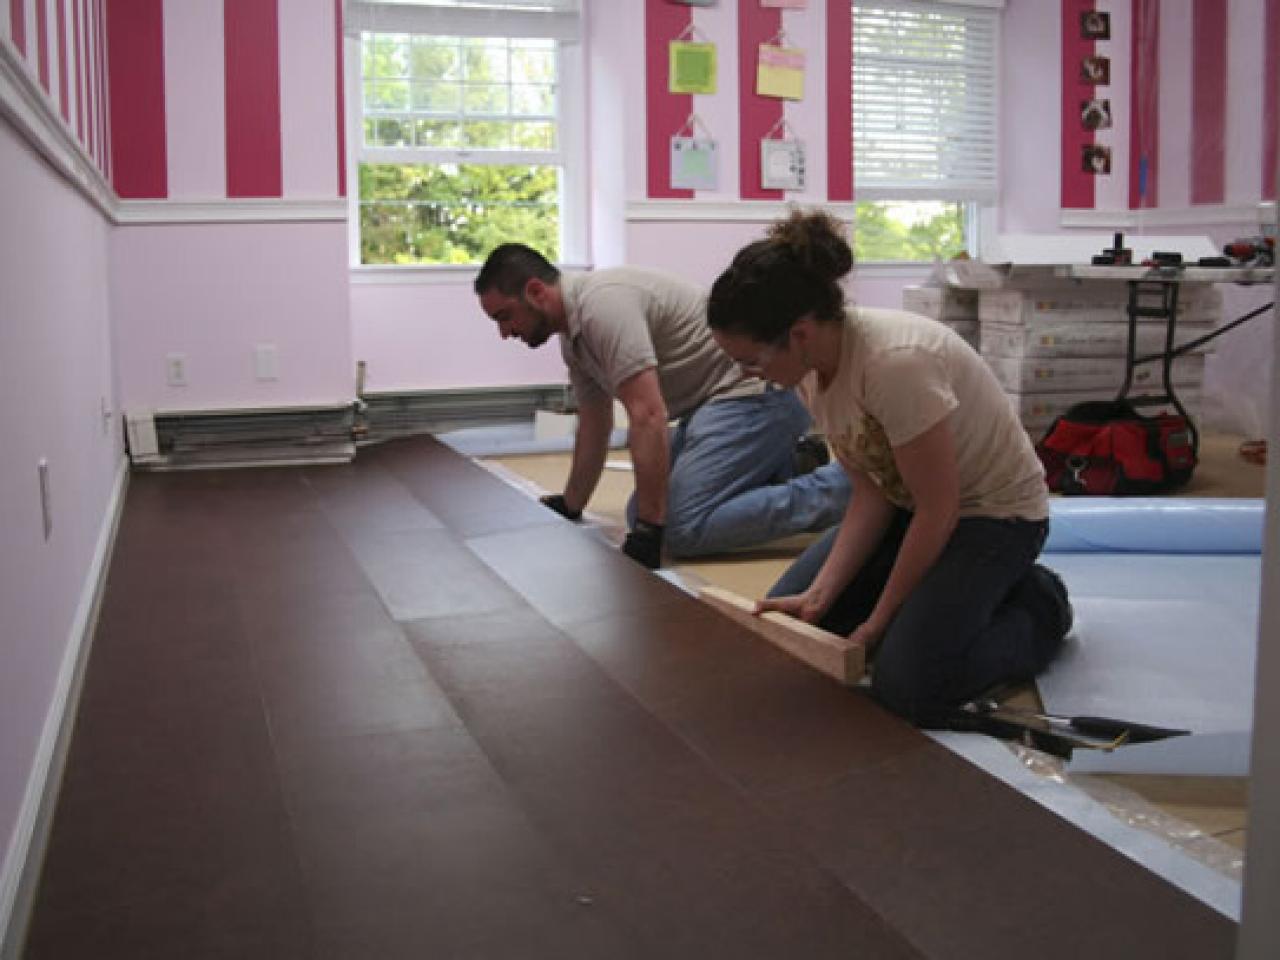 Cork Flooring Installation Hgtv